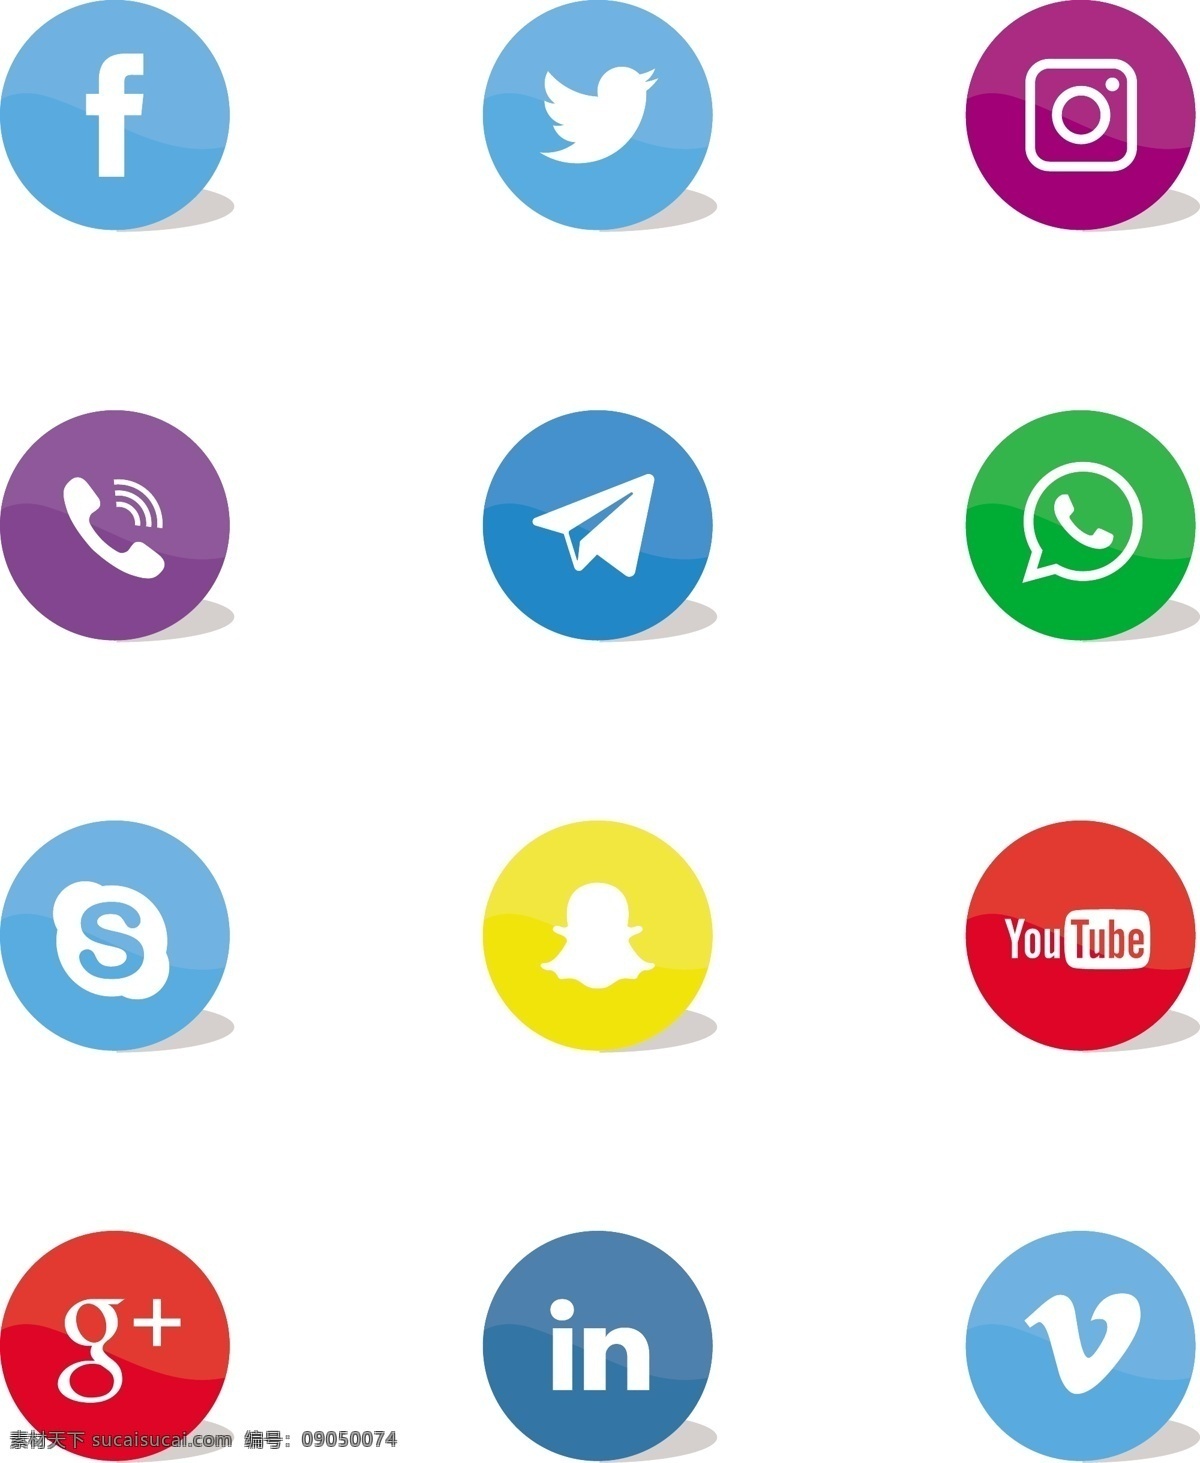 社会 网络 图标 集 背景 技术 脸谱网 按钮 颜色 instagram 社交 喜欢 推特 列表 youtube whatsapp 社会网络 skype snapchat